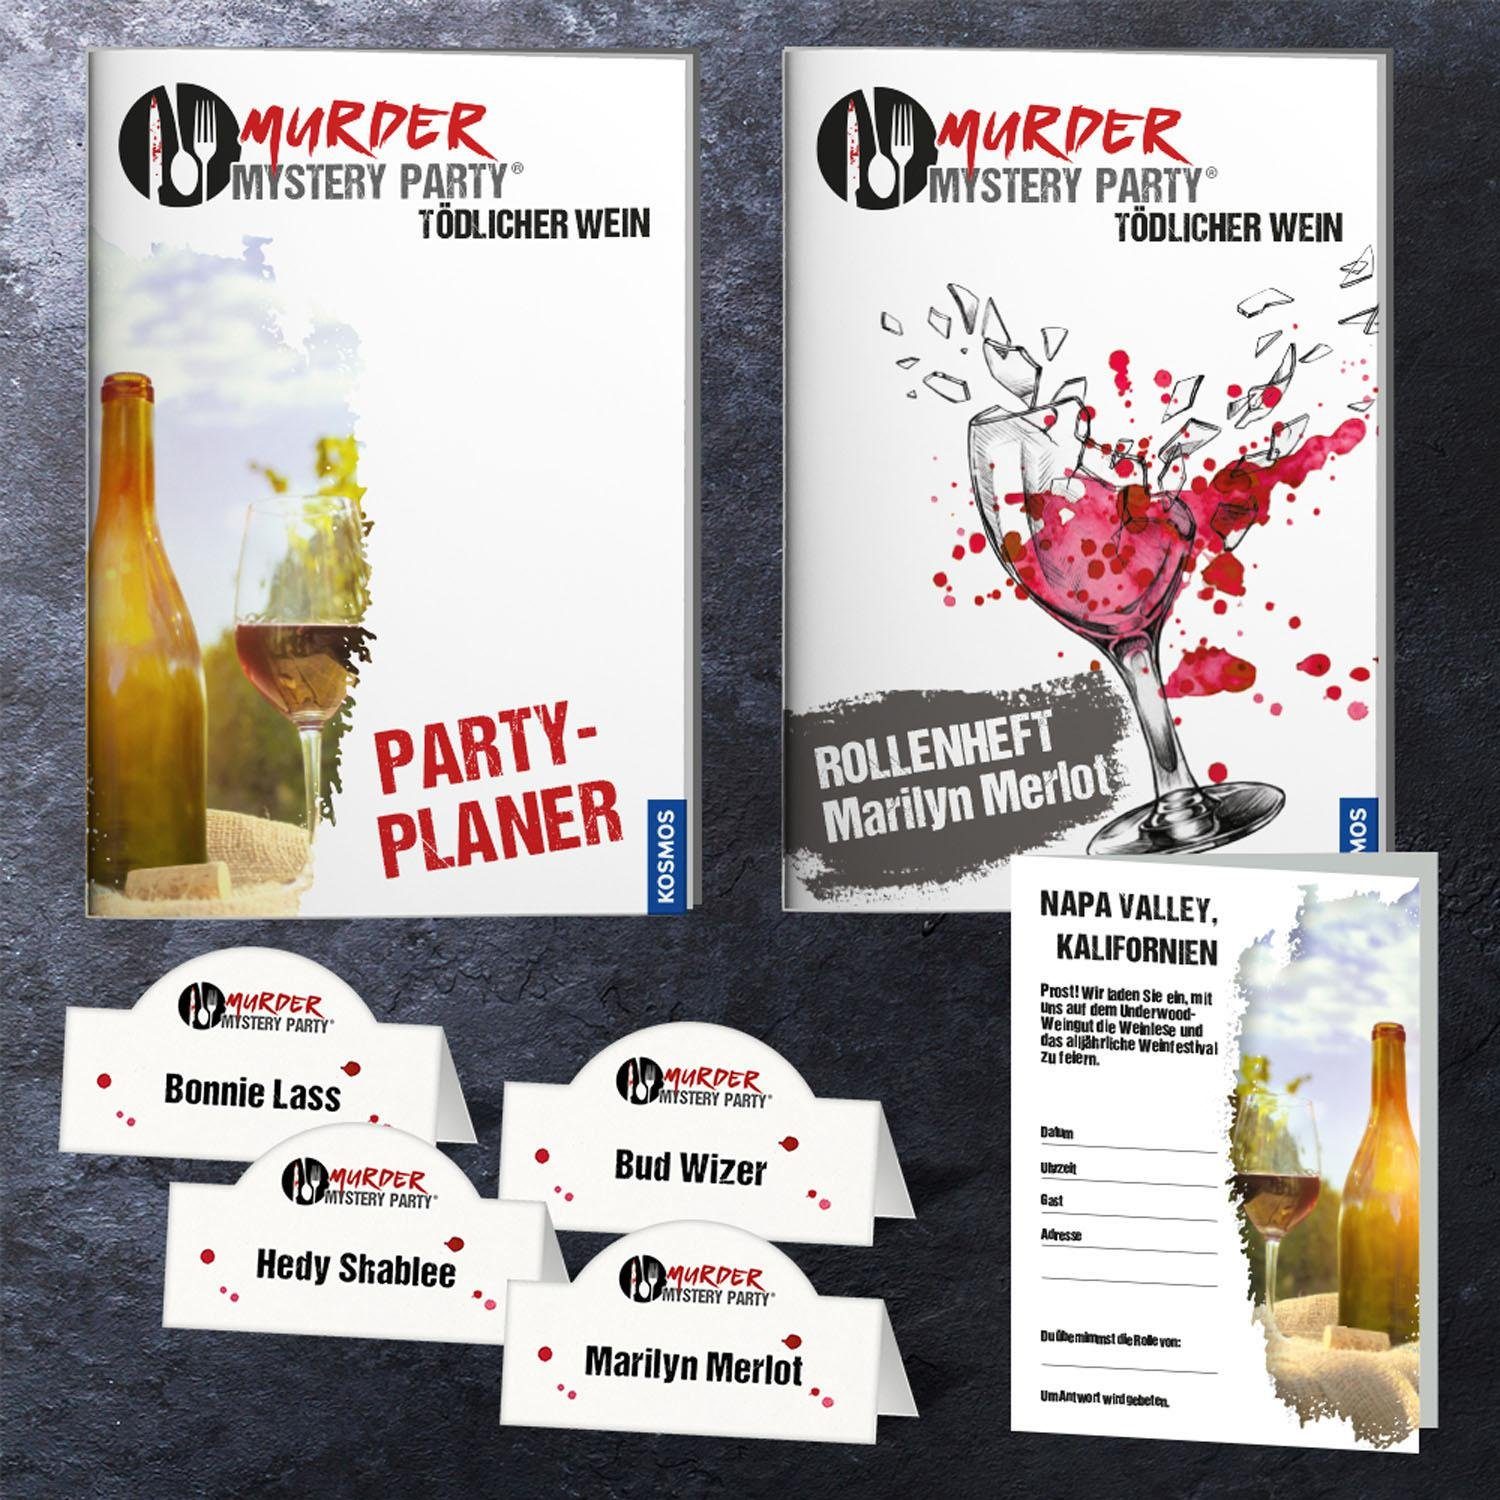 Tödlicher Murder Party Wein Mystery Kosmos - Spiel,